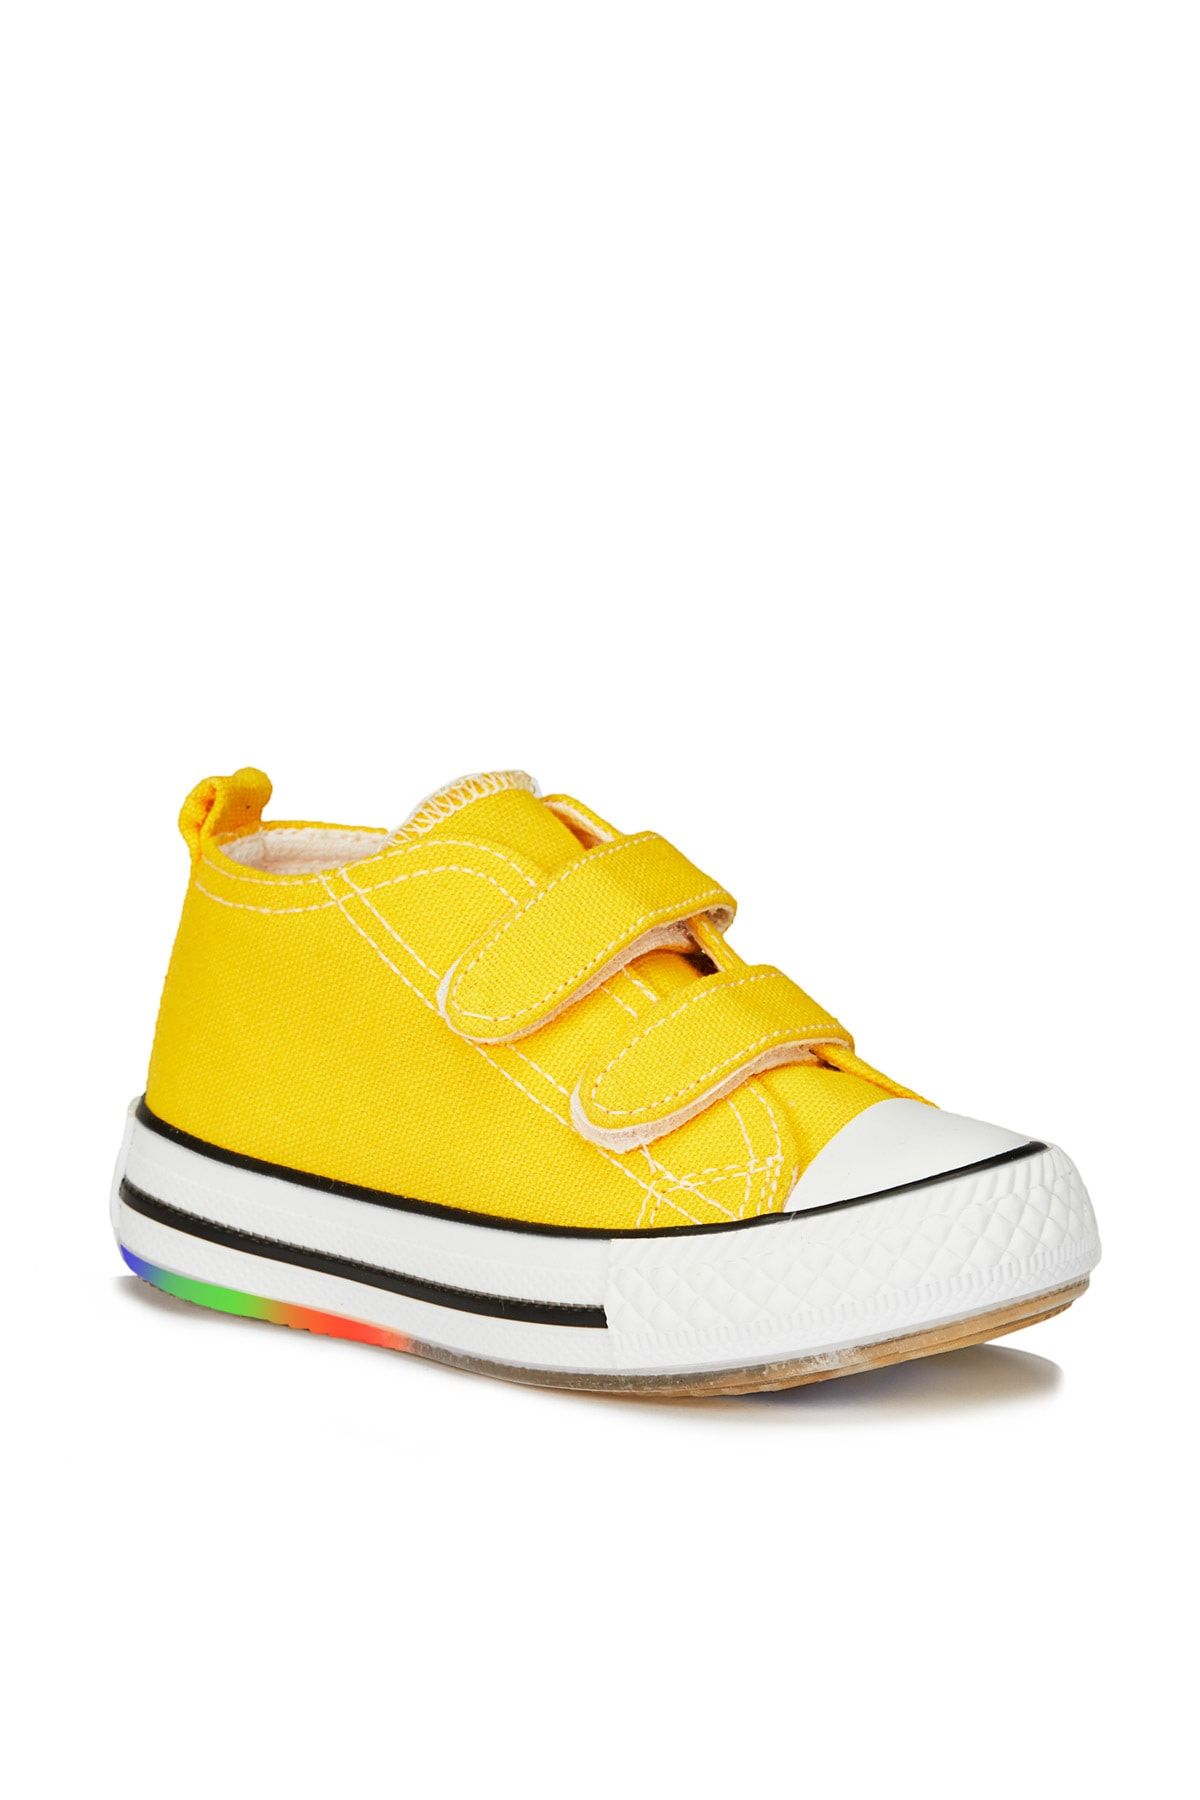 Vicco Pino Işıklı Unisex Bebe Sarı Spor Ayakkabı